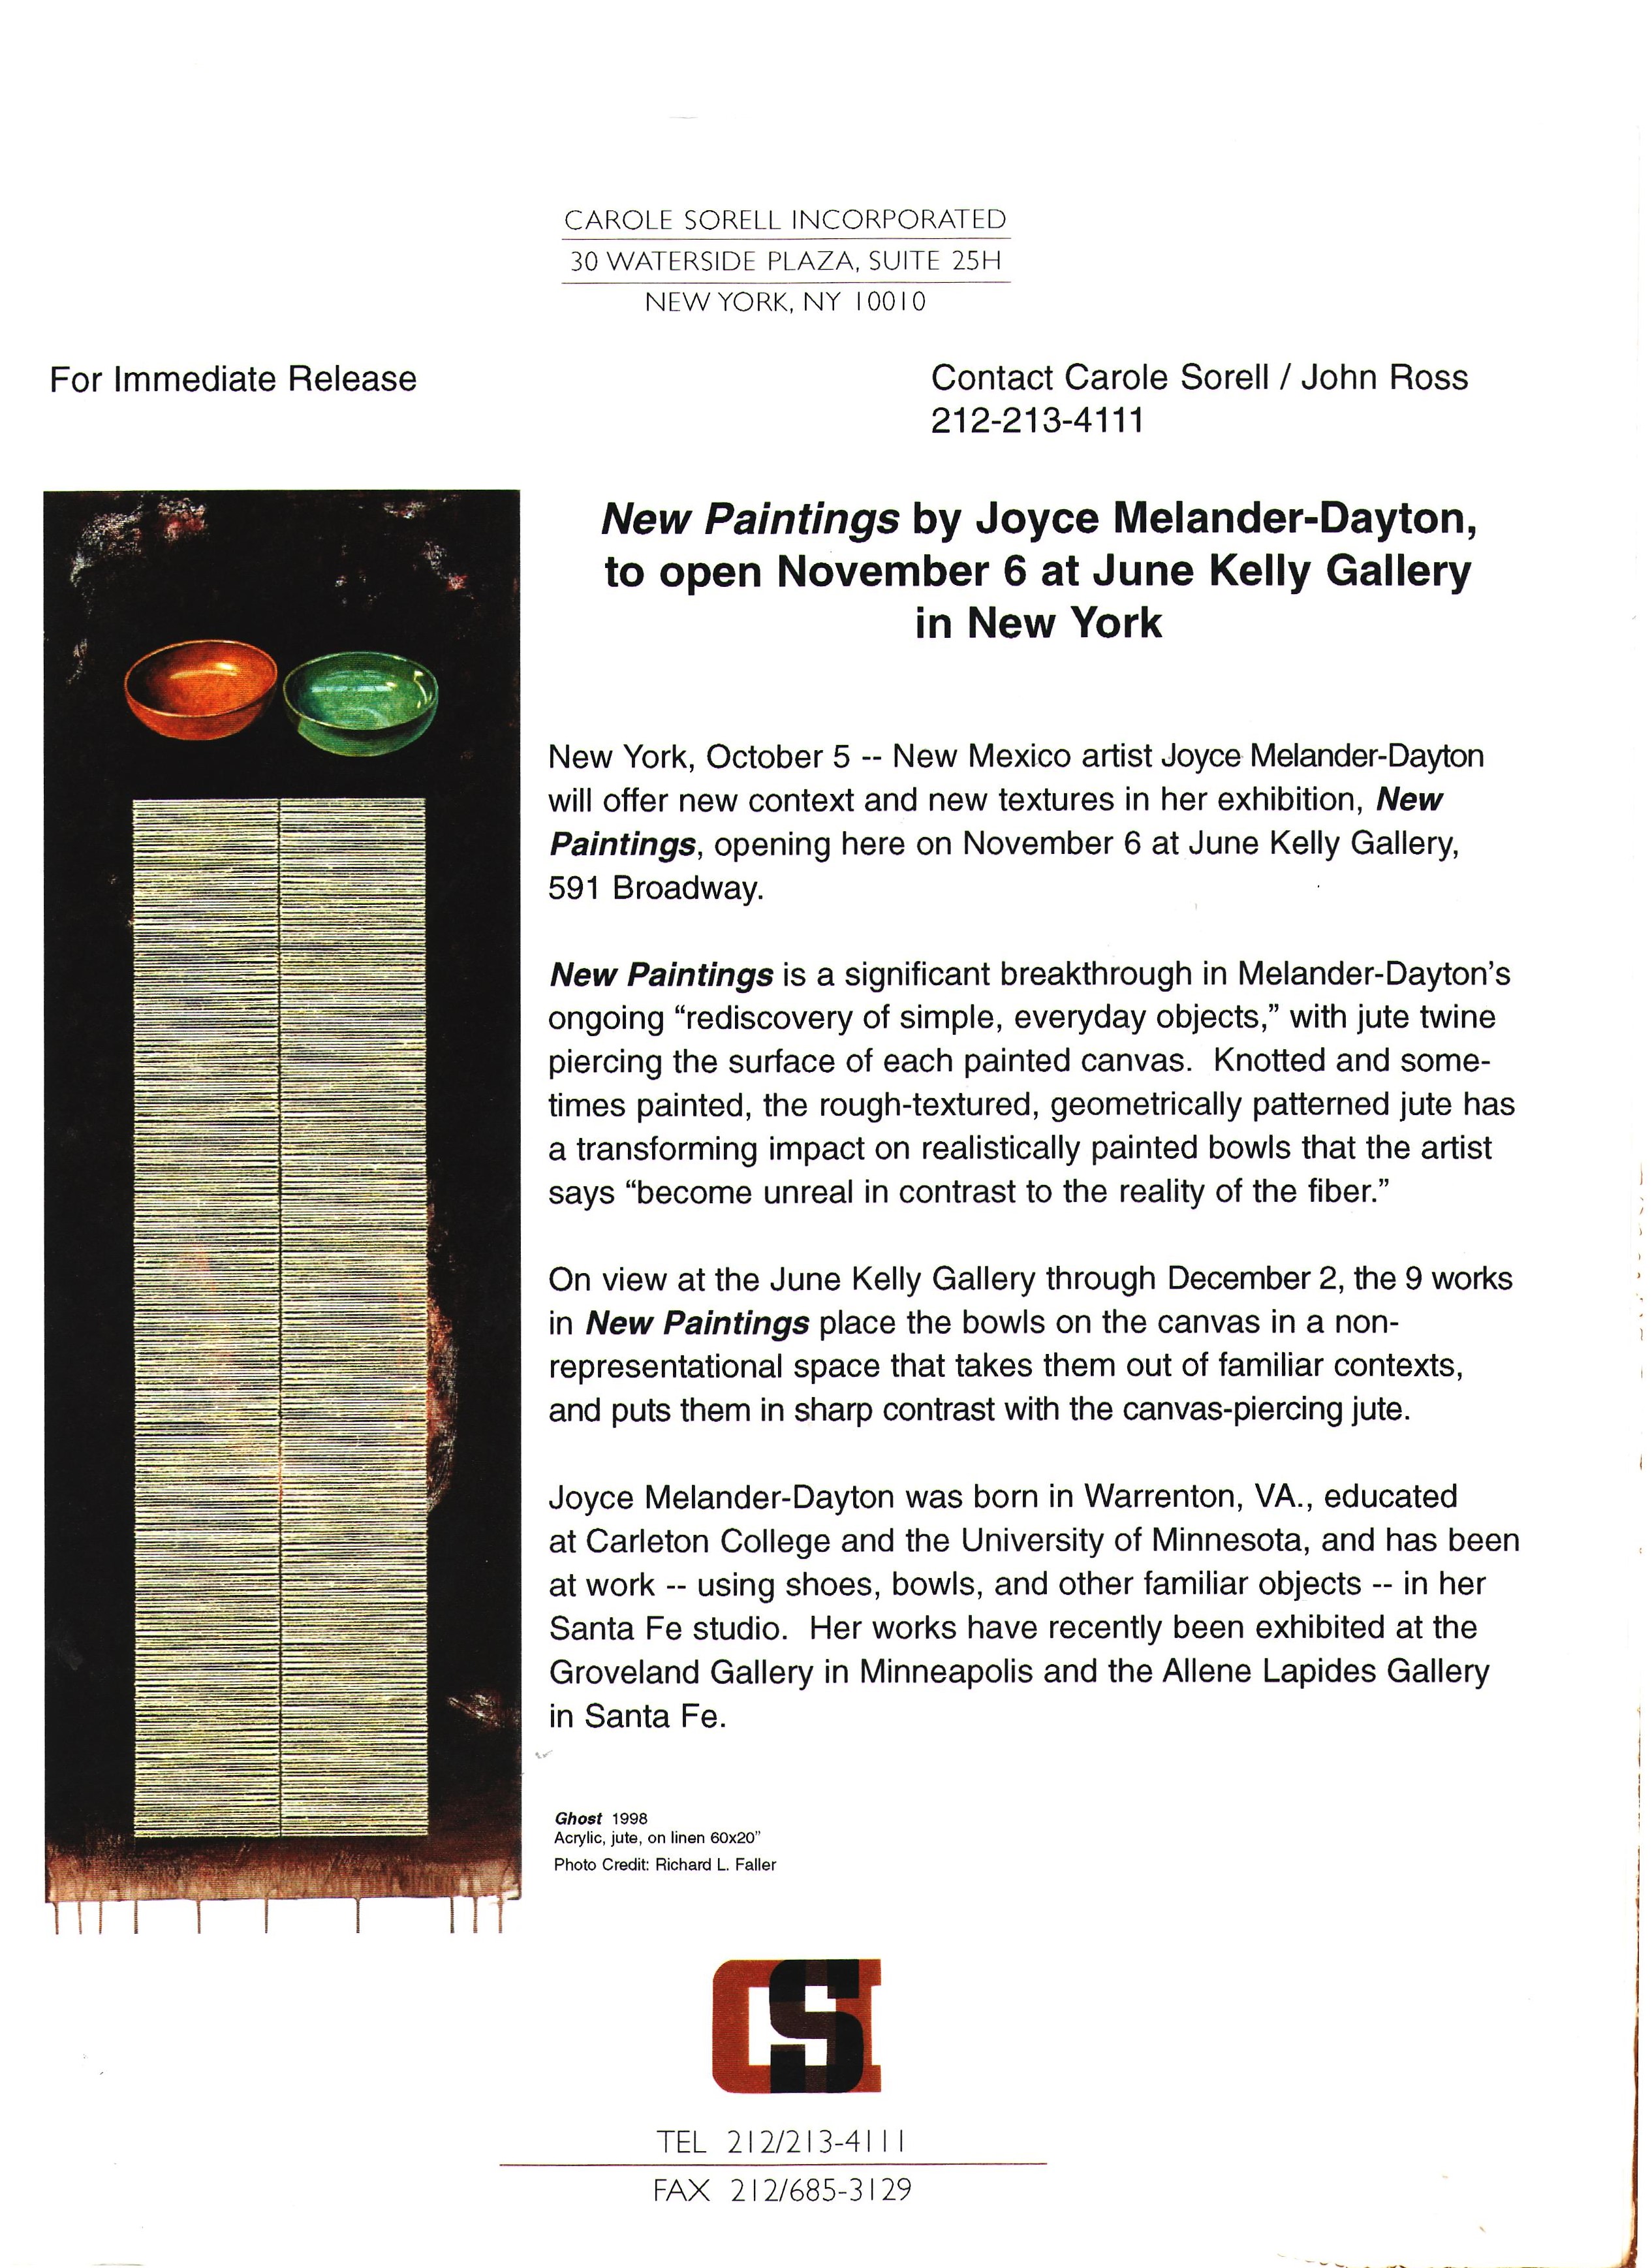 June Kelly Gallery Press Release